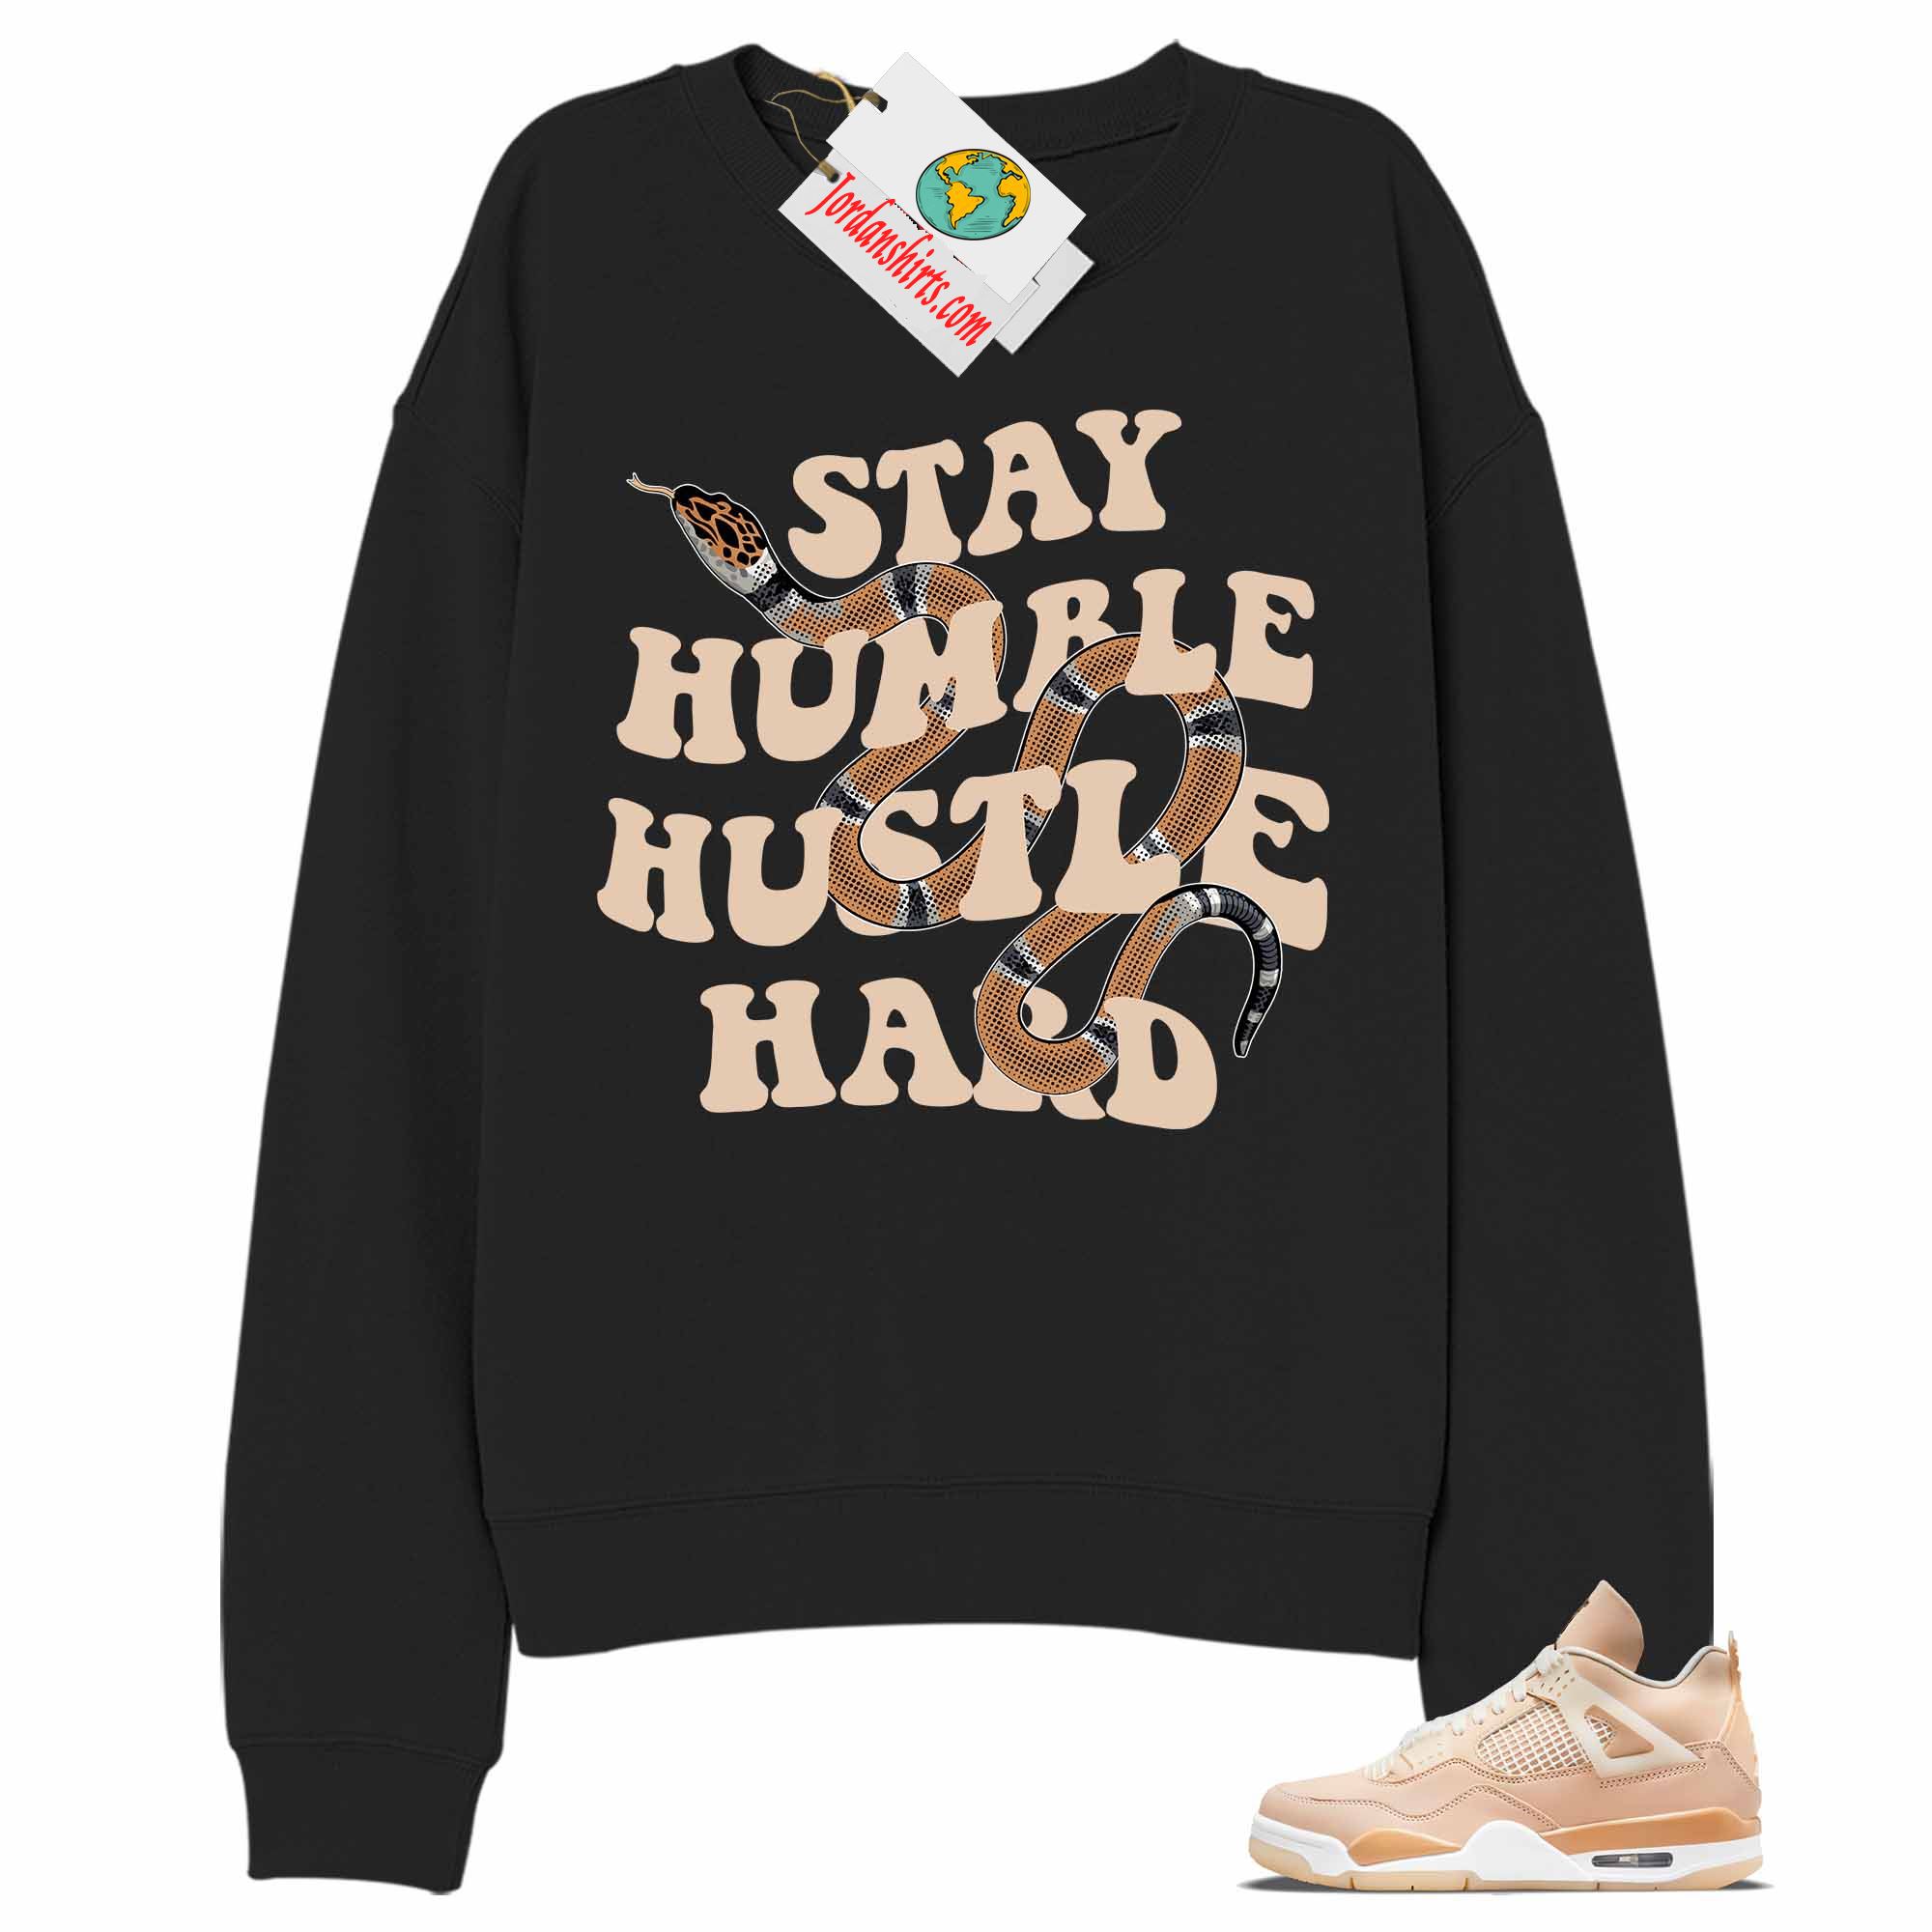 Jordan 4 Sweatshirt, Stay Humble Hustle Hard King Snake Black Sweatshirt Air Jordan 4 Shimmer 4s Size Up To 5xl